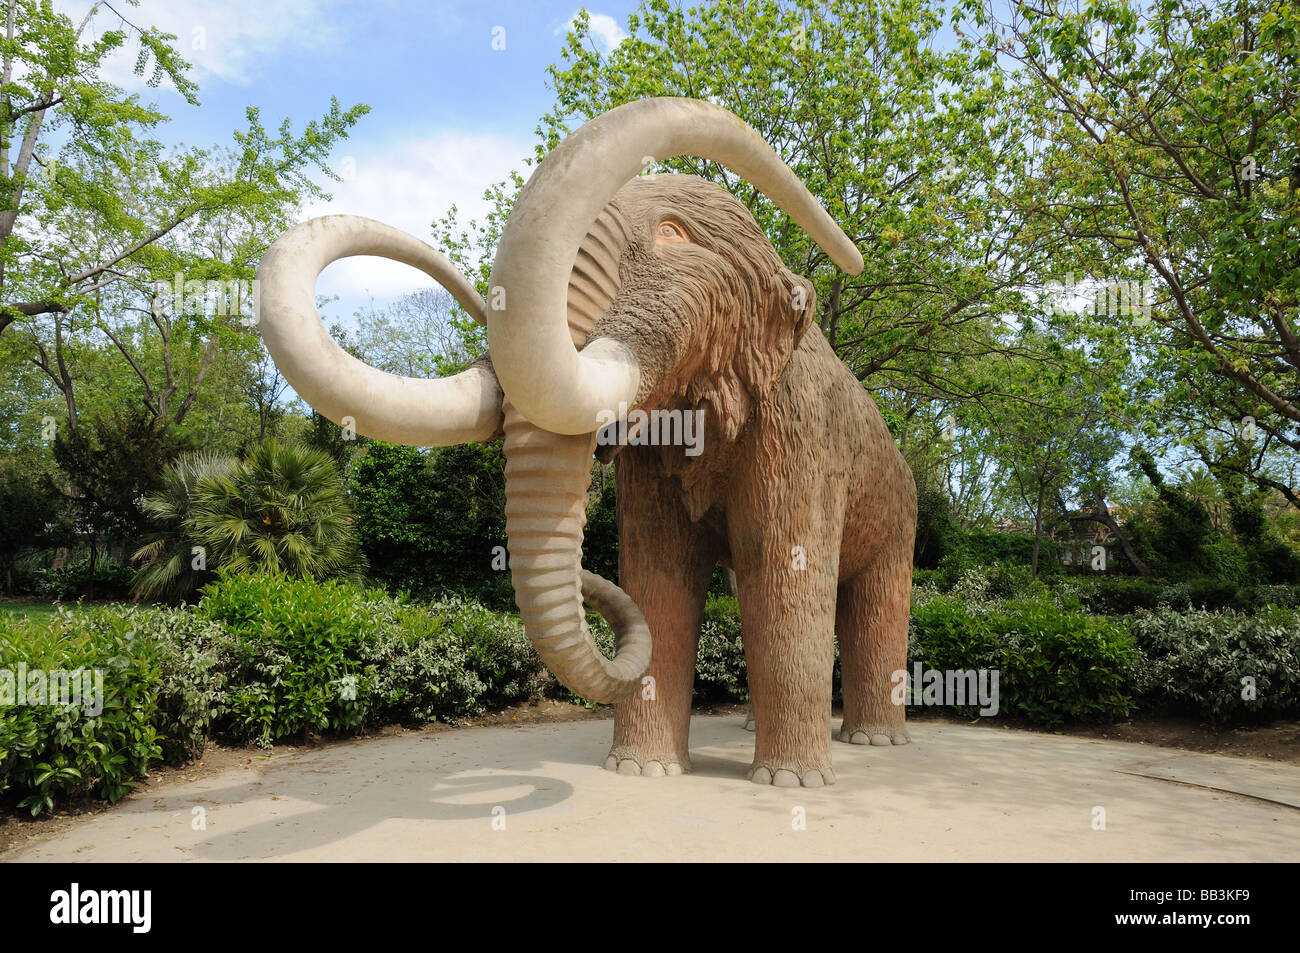 Mammoth statue in Parc de la Ciutadella in Barcelona, Spain Stock Photo